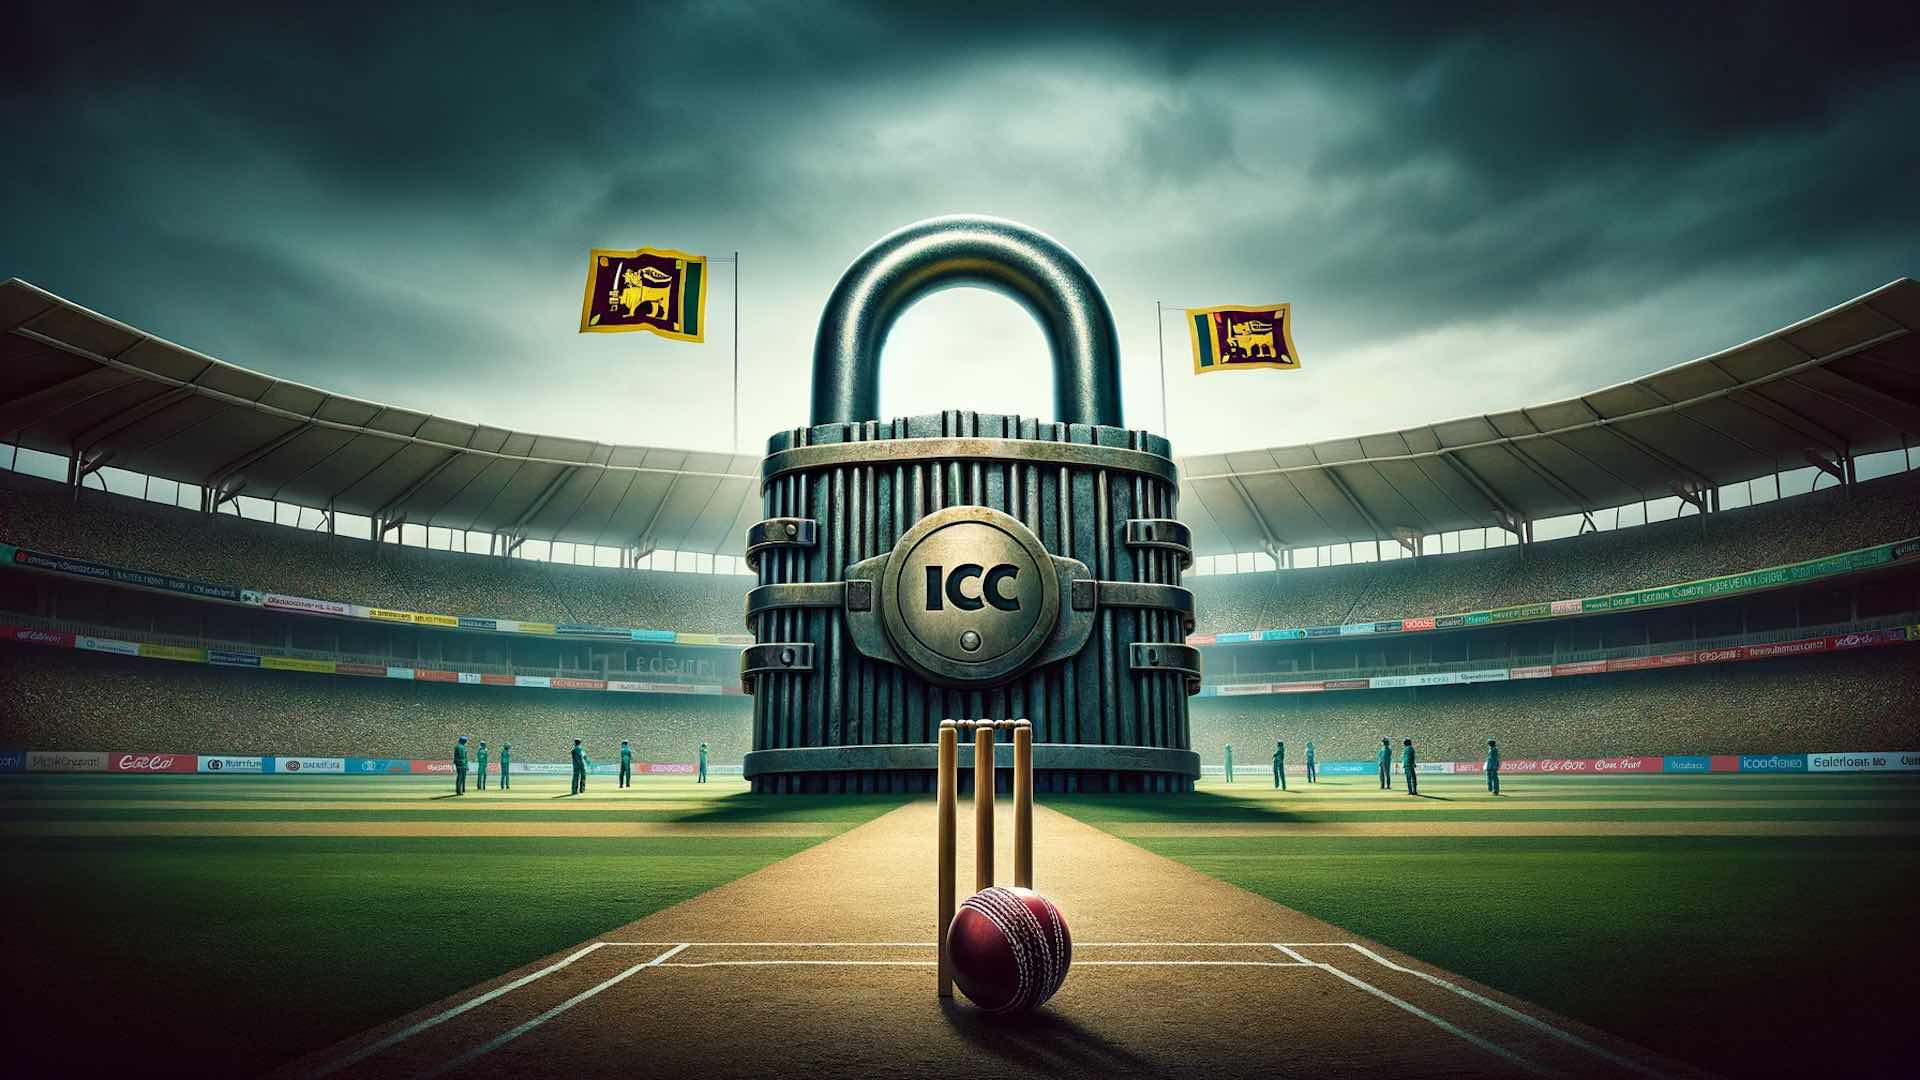 सरकारी हस्तक्षेपामुळे आयसीसीने श्रीलंका क्रिकेटचे निलंबन केले